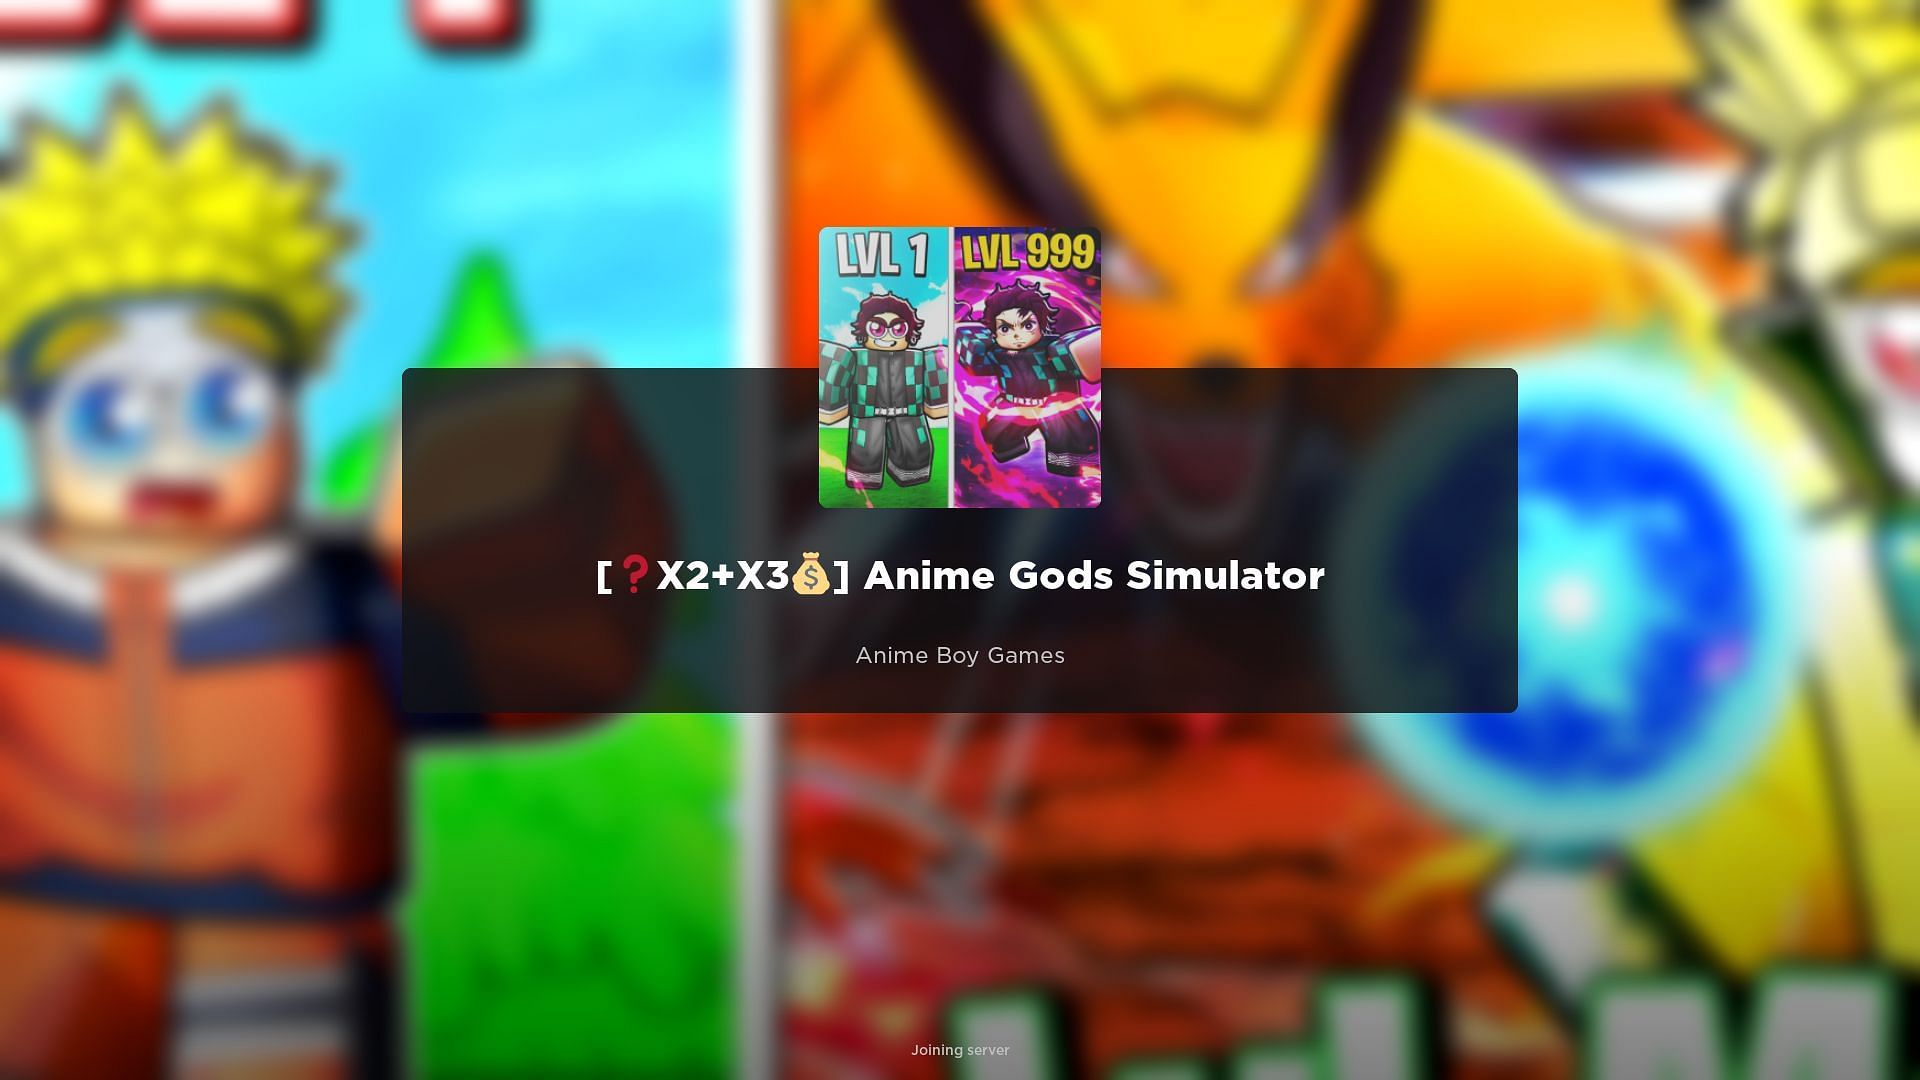 Redeem Codes in Anime Gods Simulator